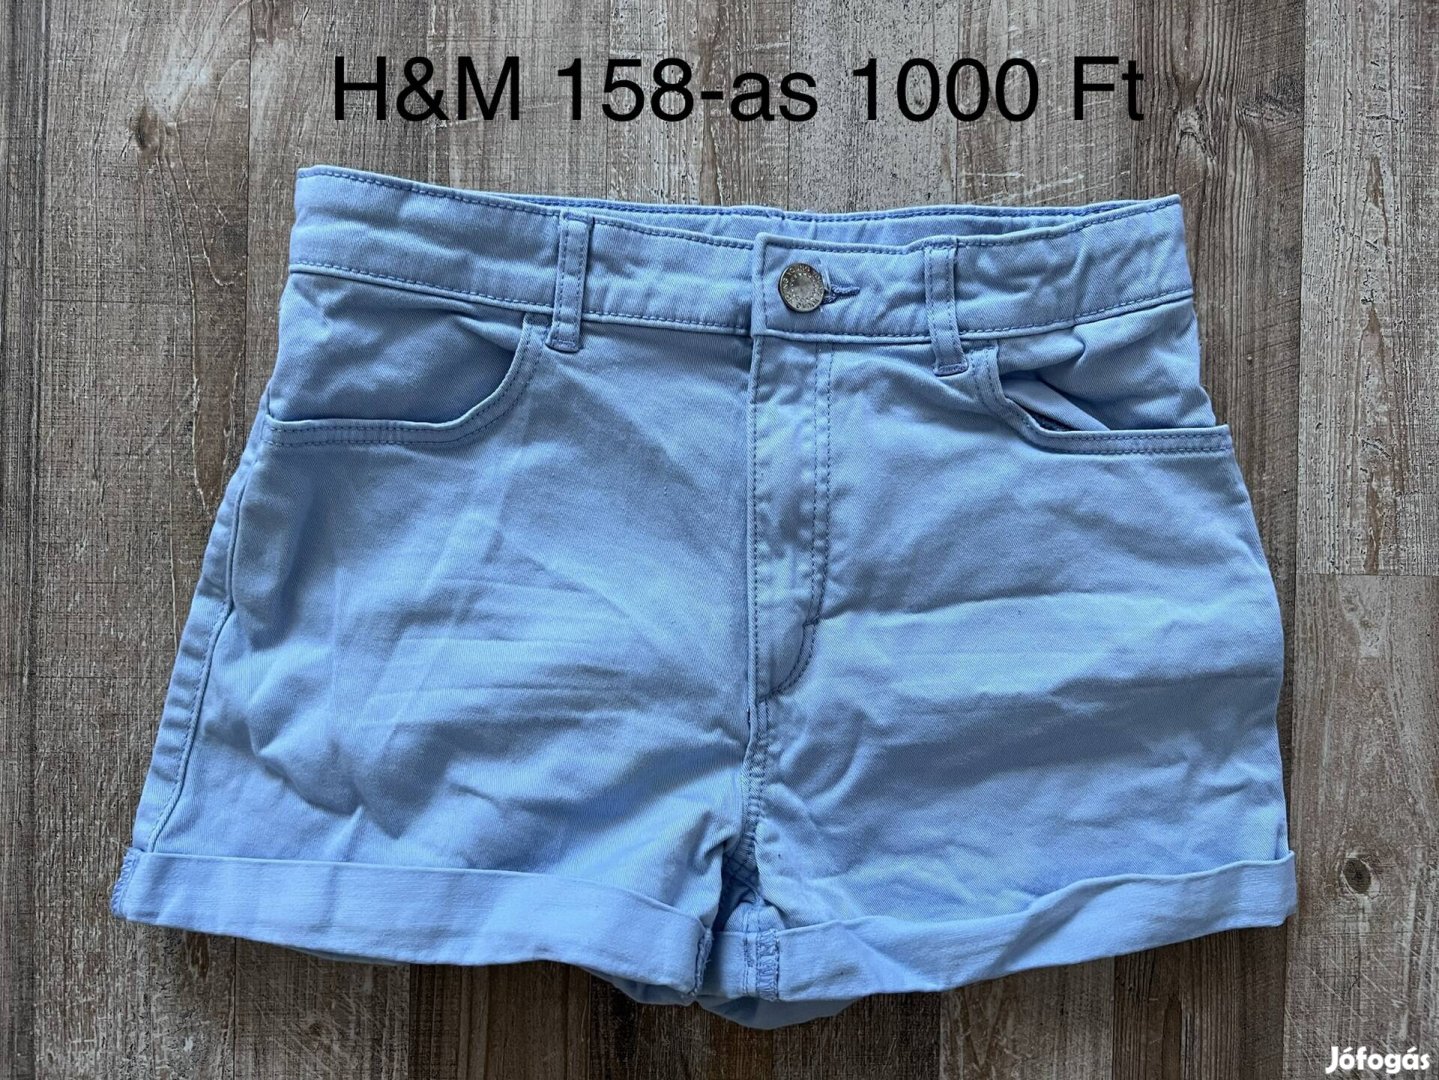 H&M 158-as lány rövidnadrág